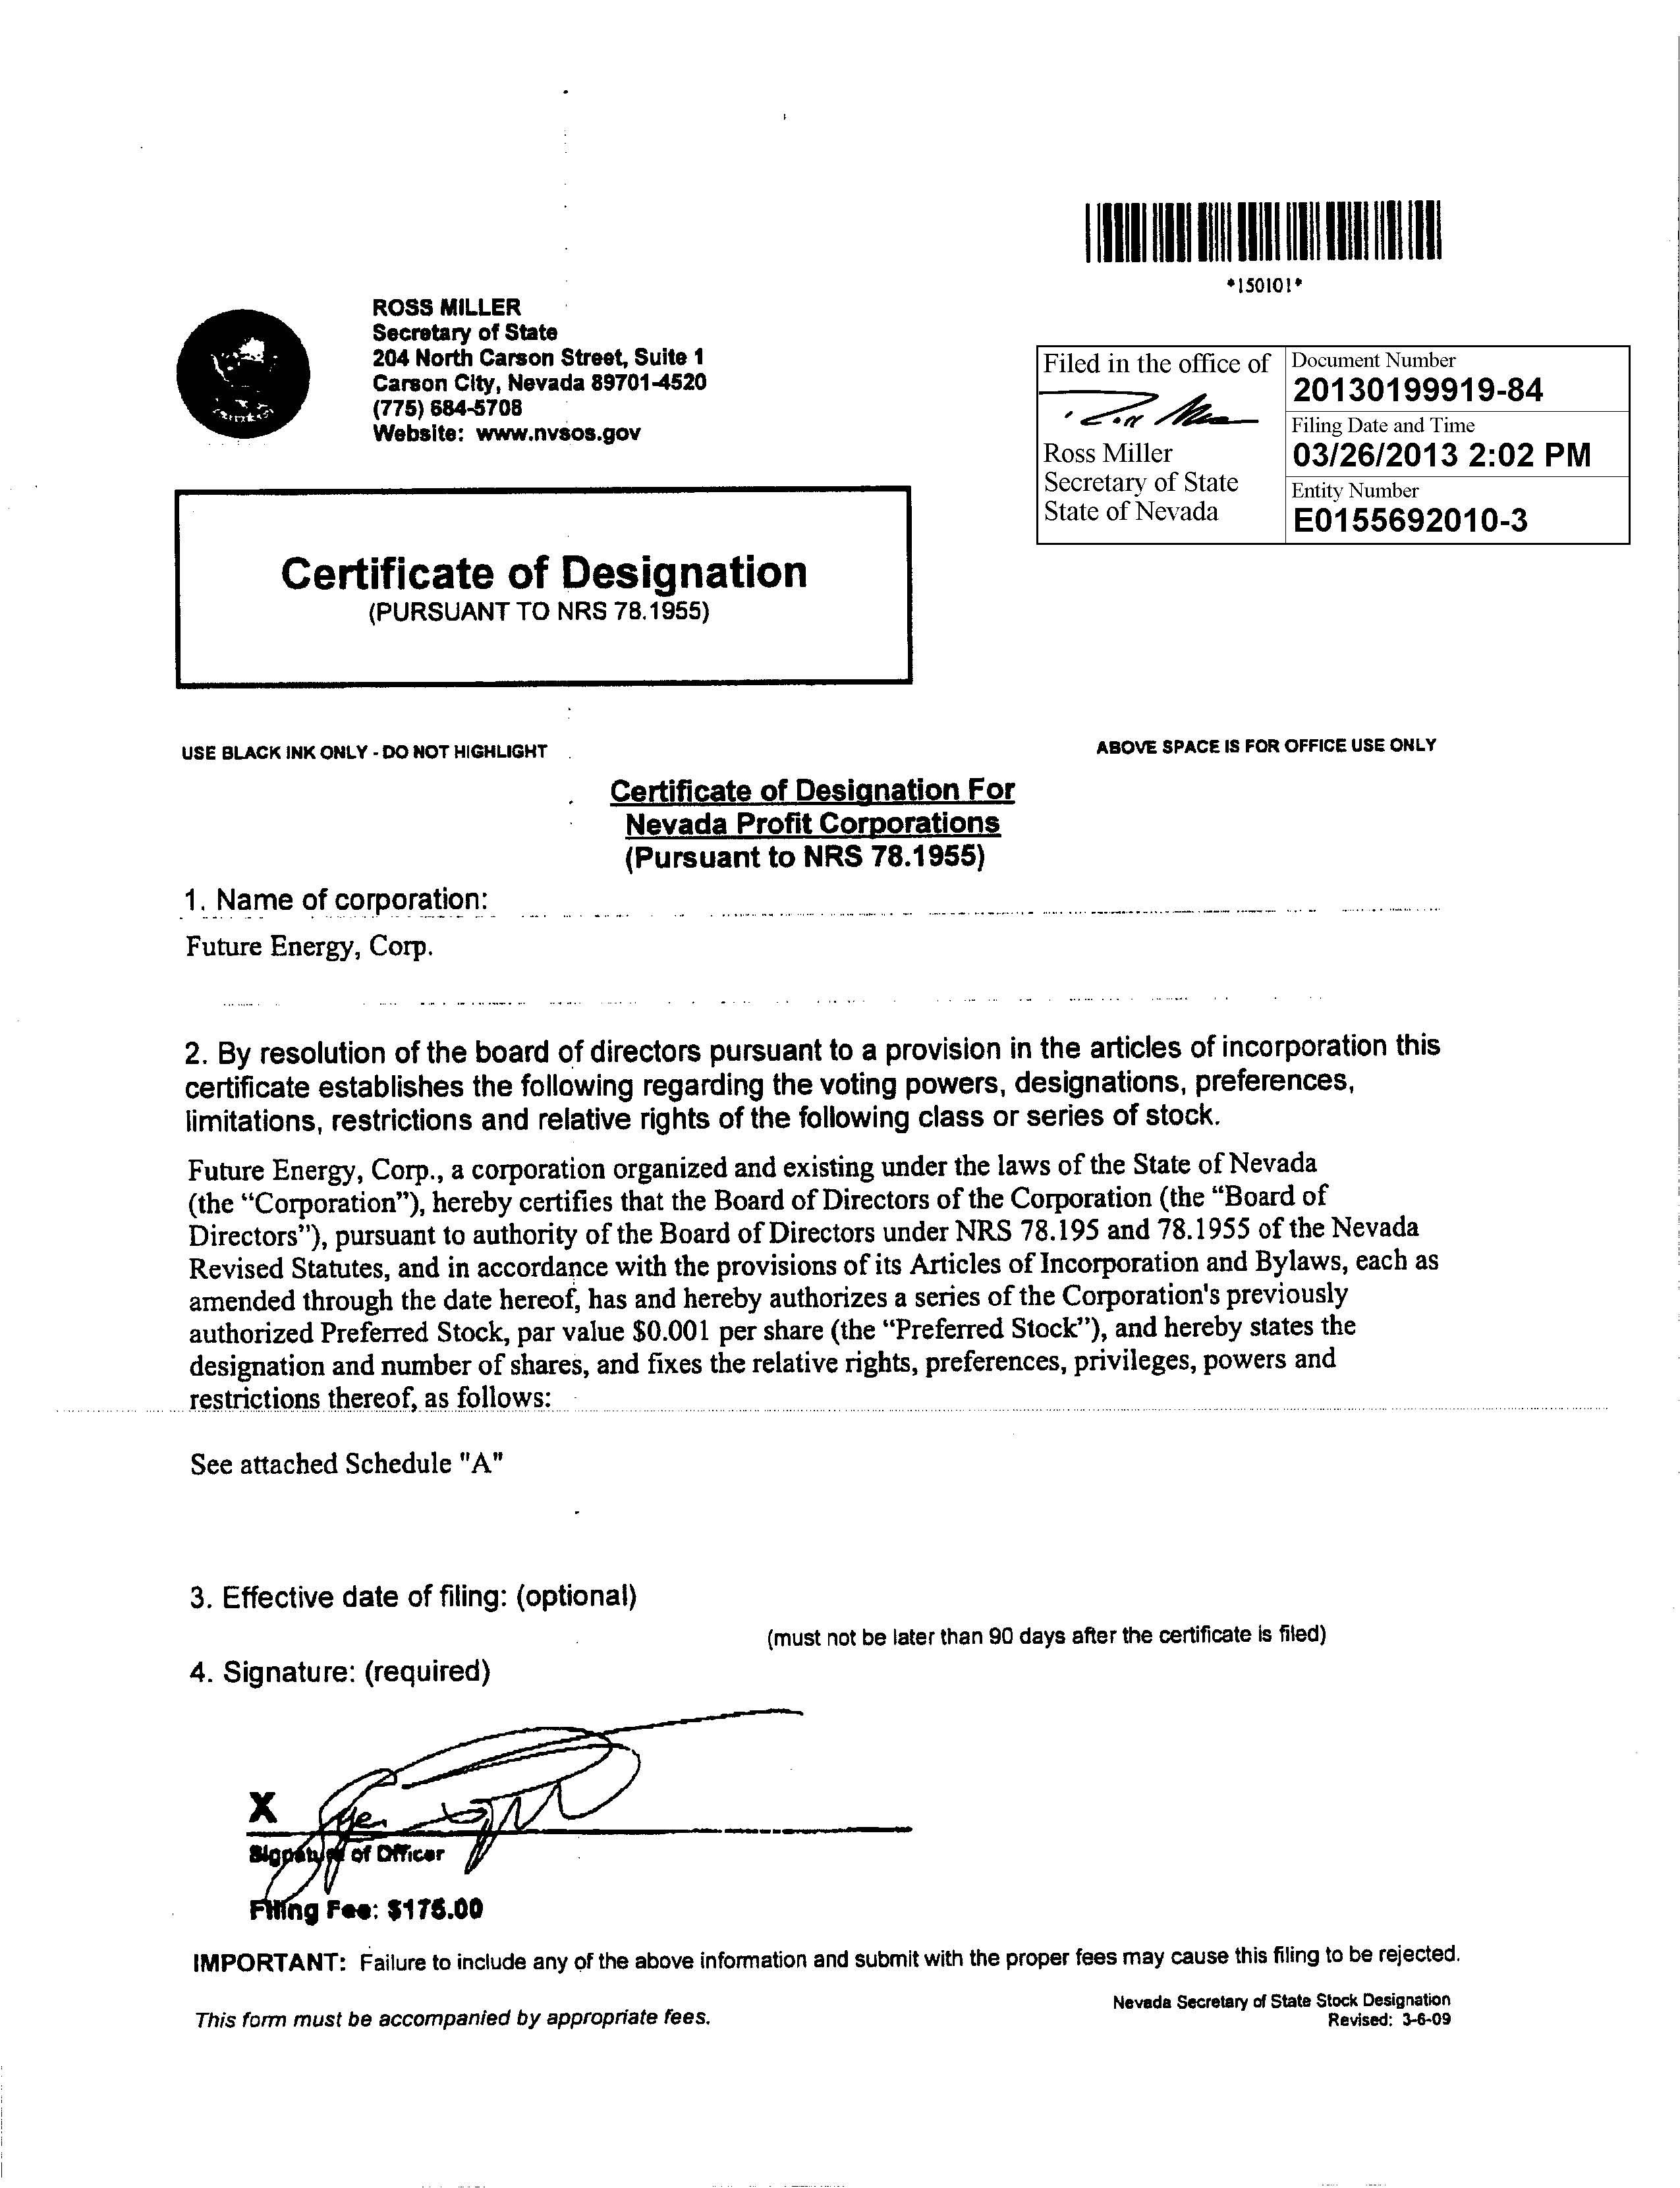 Sample Certificate Of